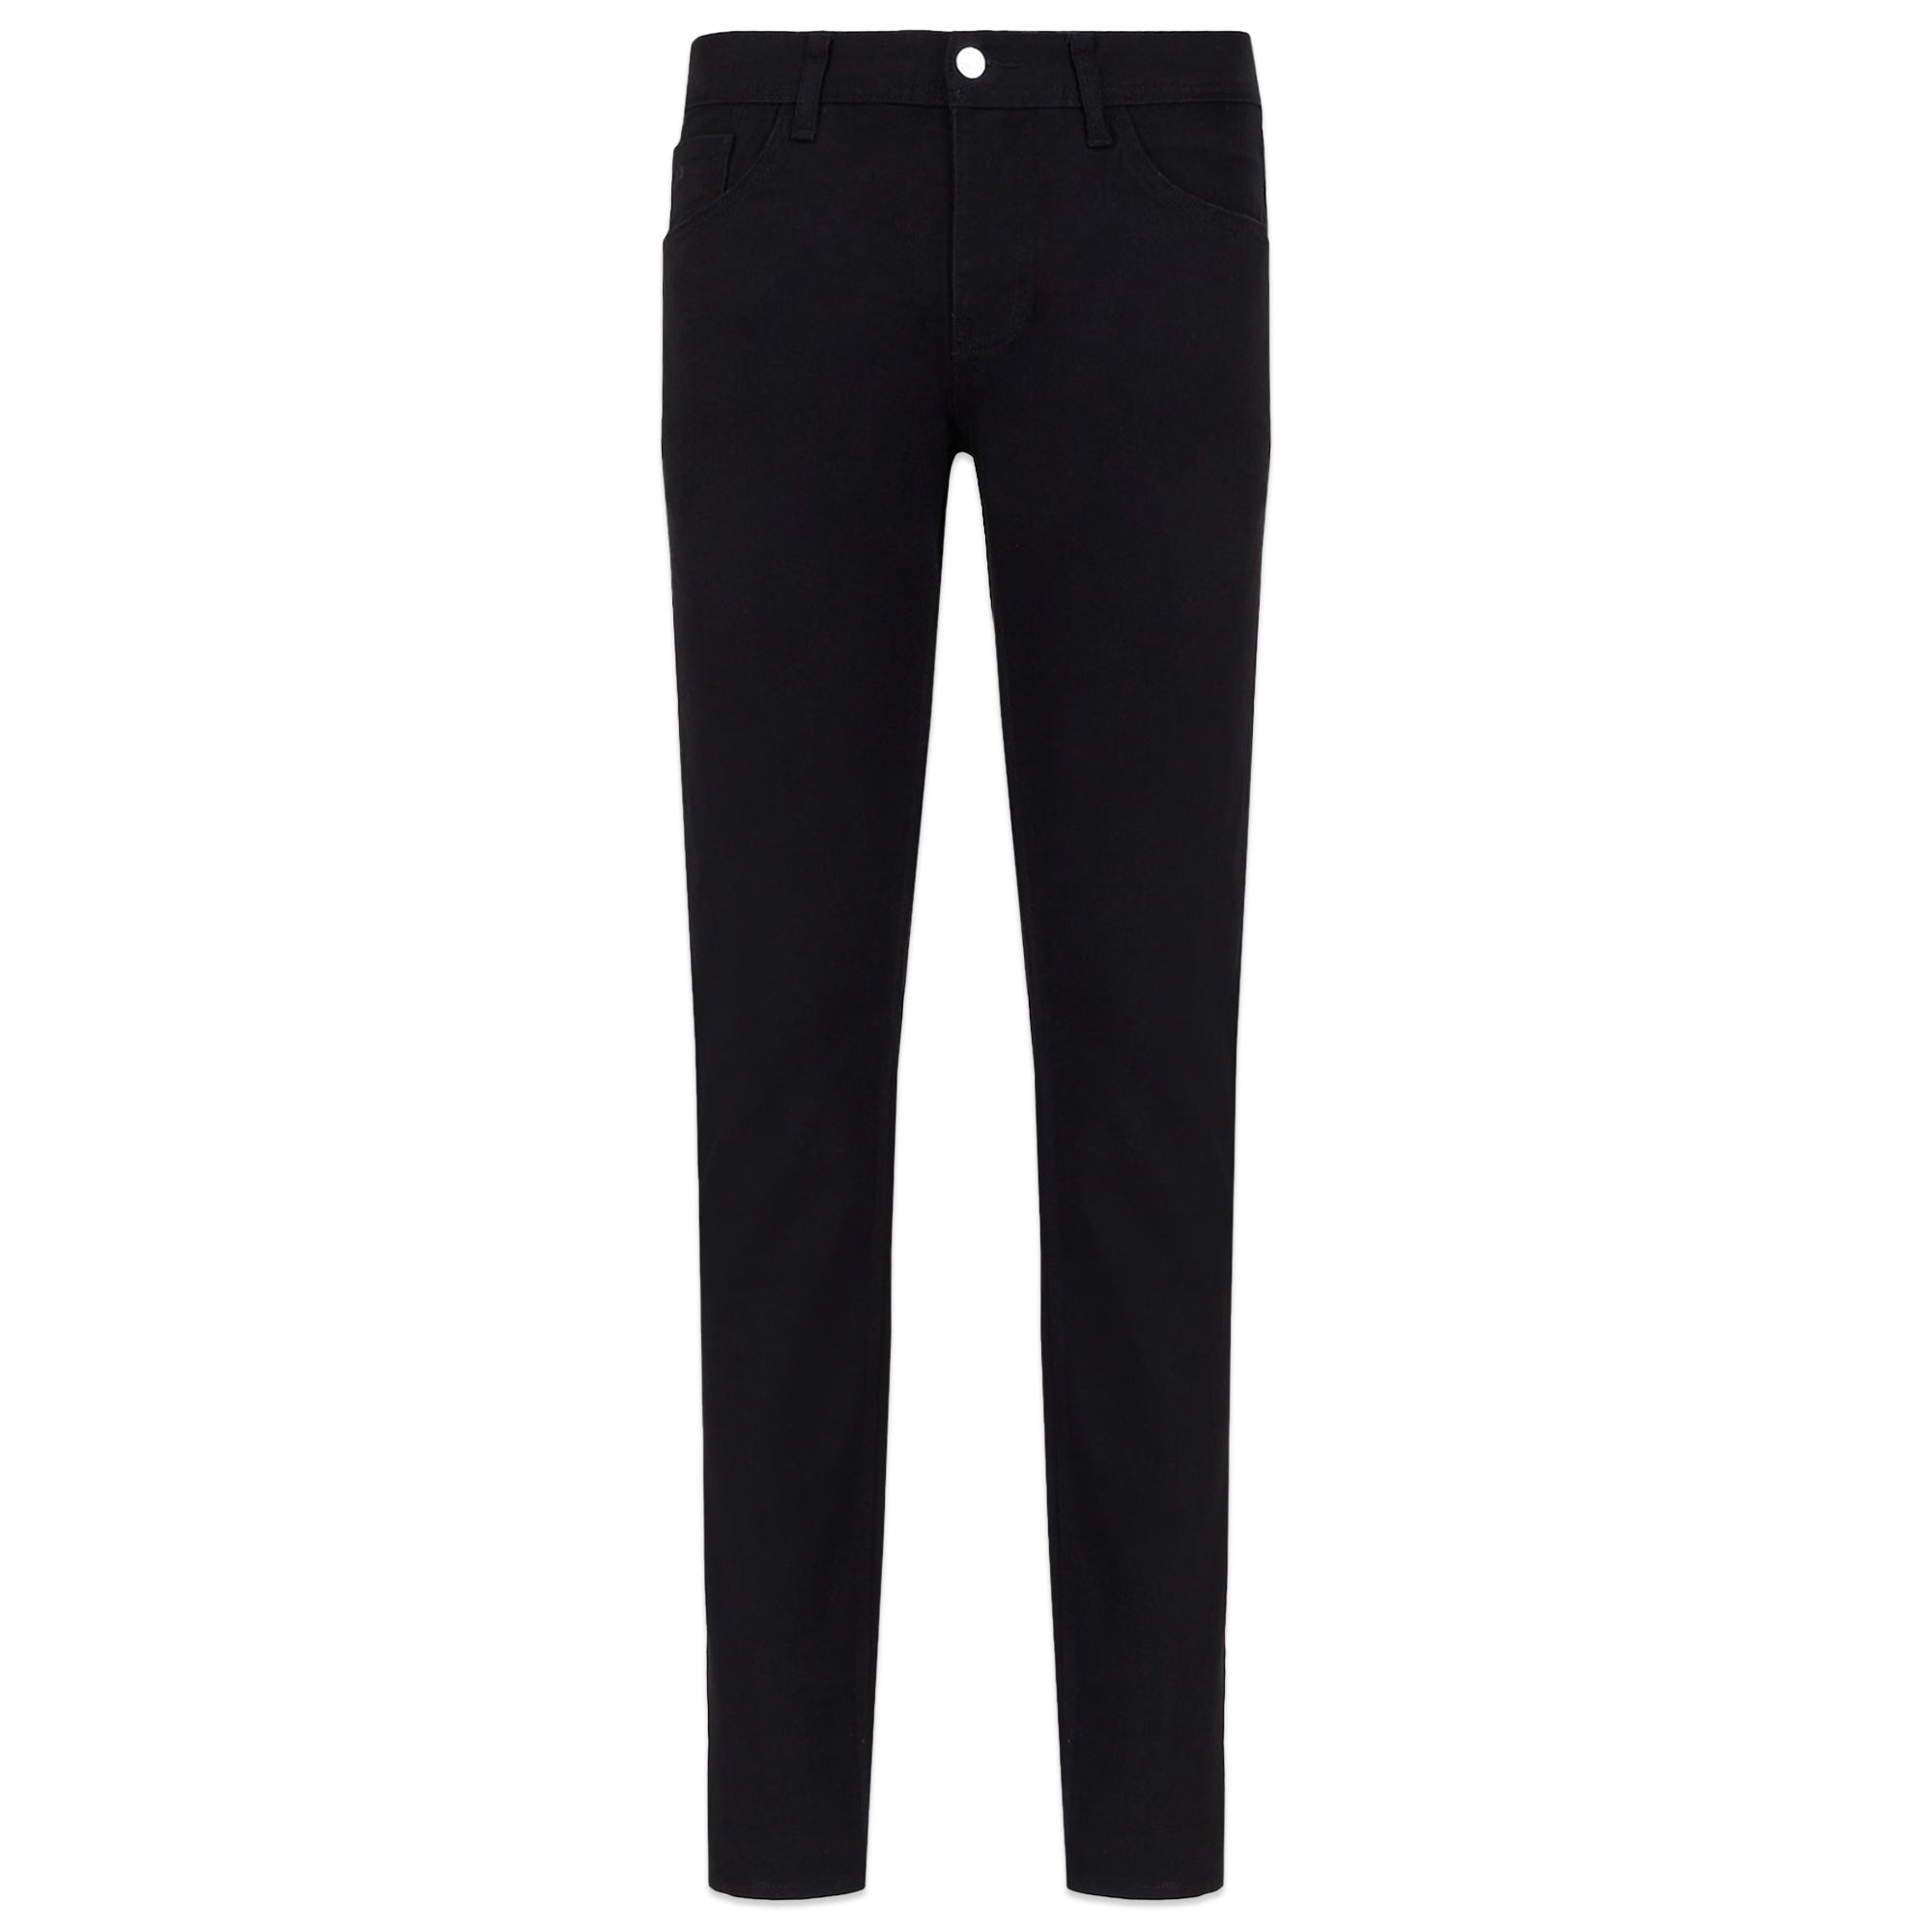 Armani Exchange J13 Slim Fit Jeans - Washed Black